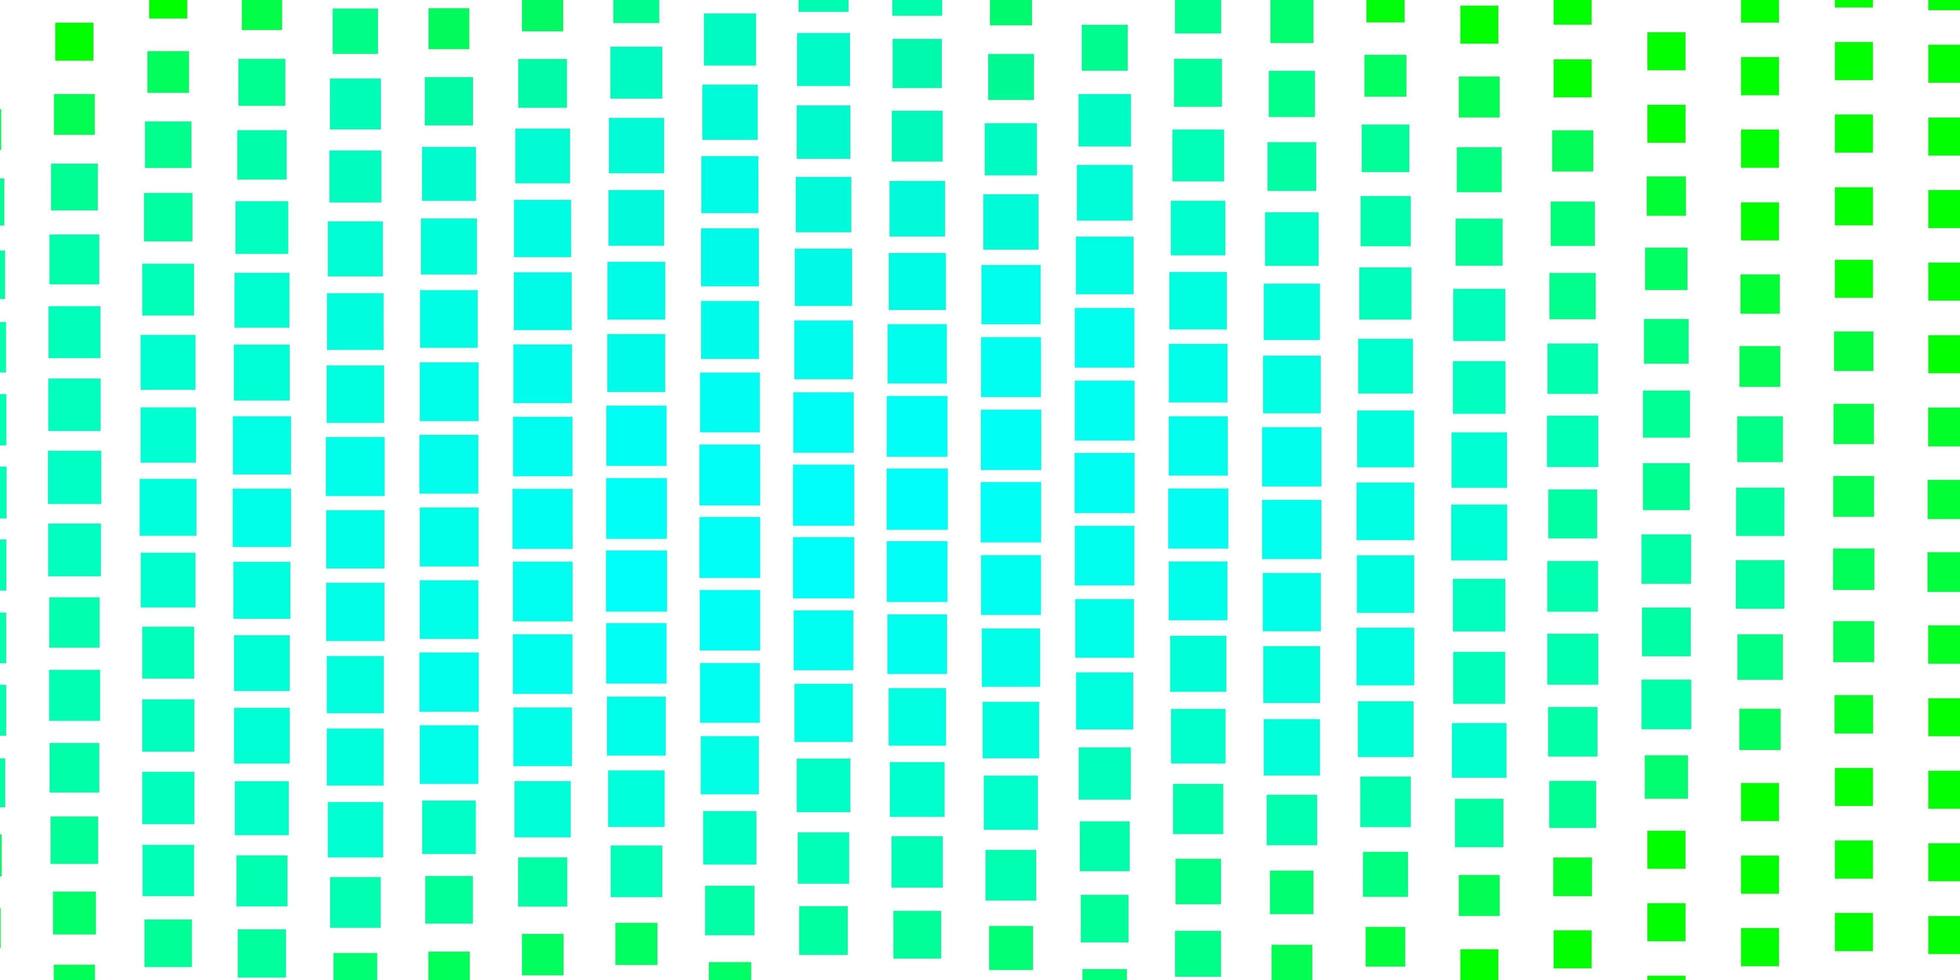 hellgrünes Vektorlayout mit Linien, Rechtecken. abstrakte Steigungsillustration mit Rechtecken. Muster für Geschäftsbroschüren, Broschüren vektor